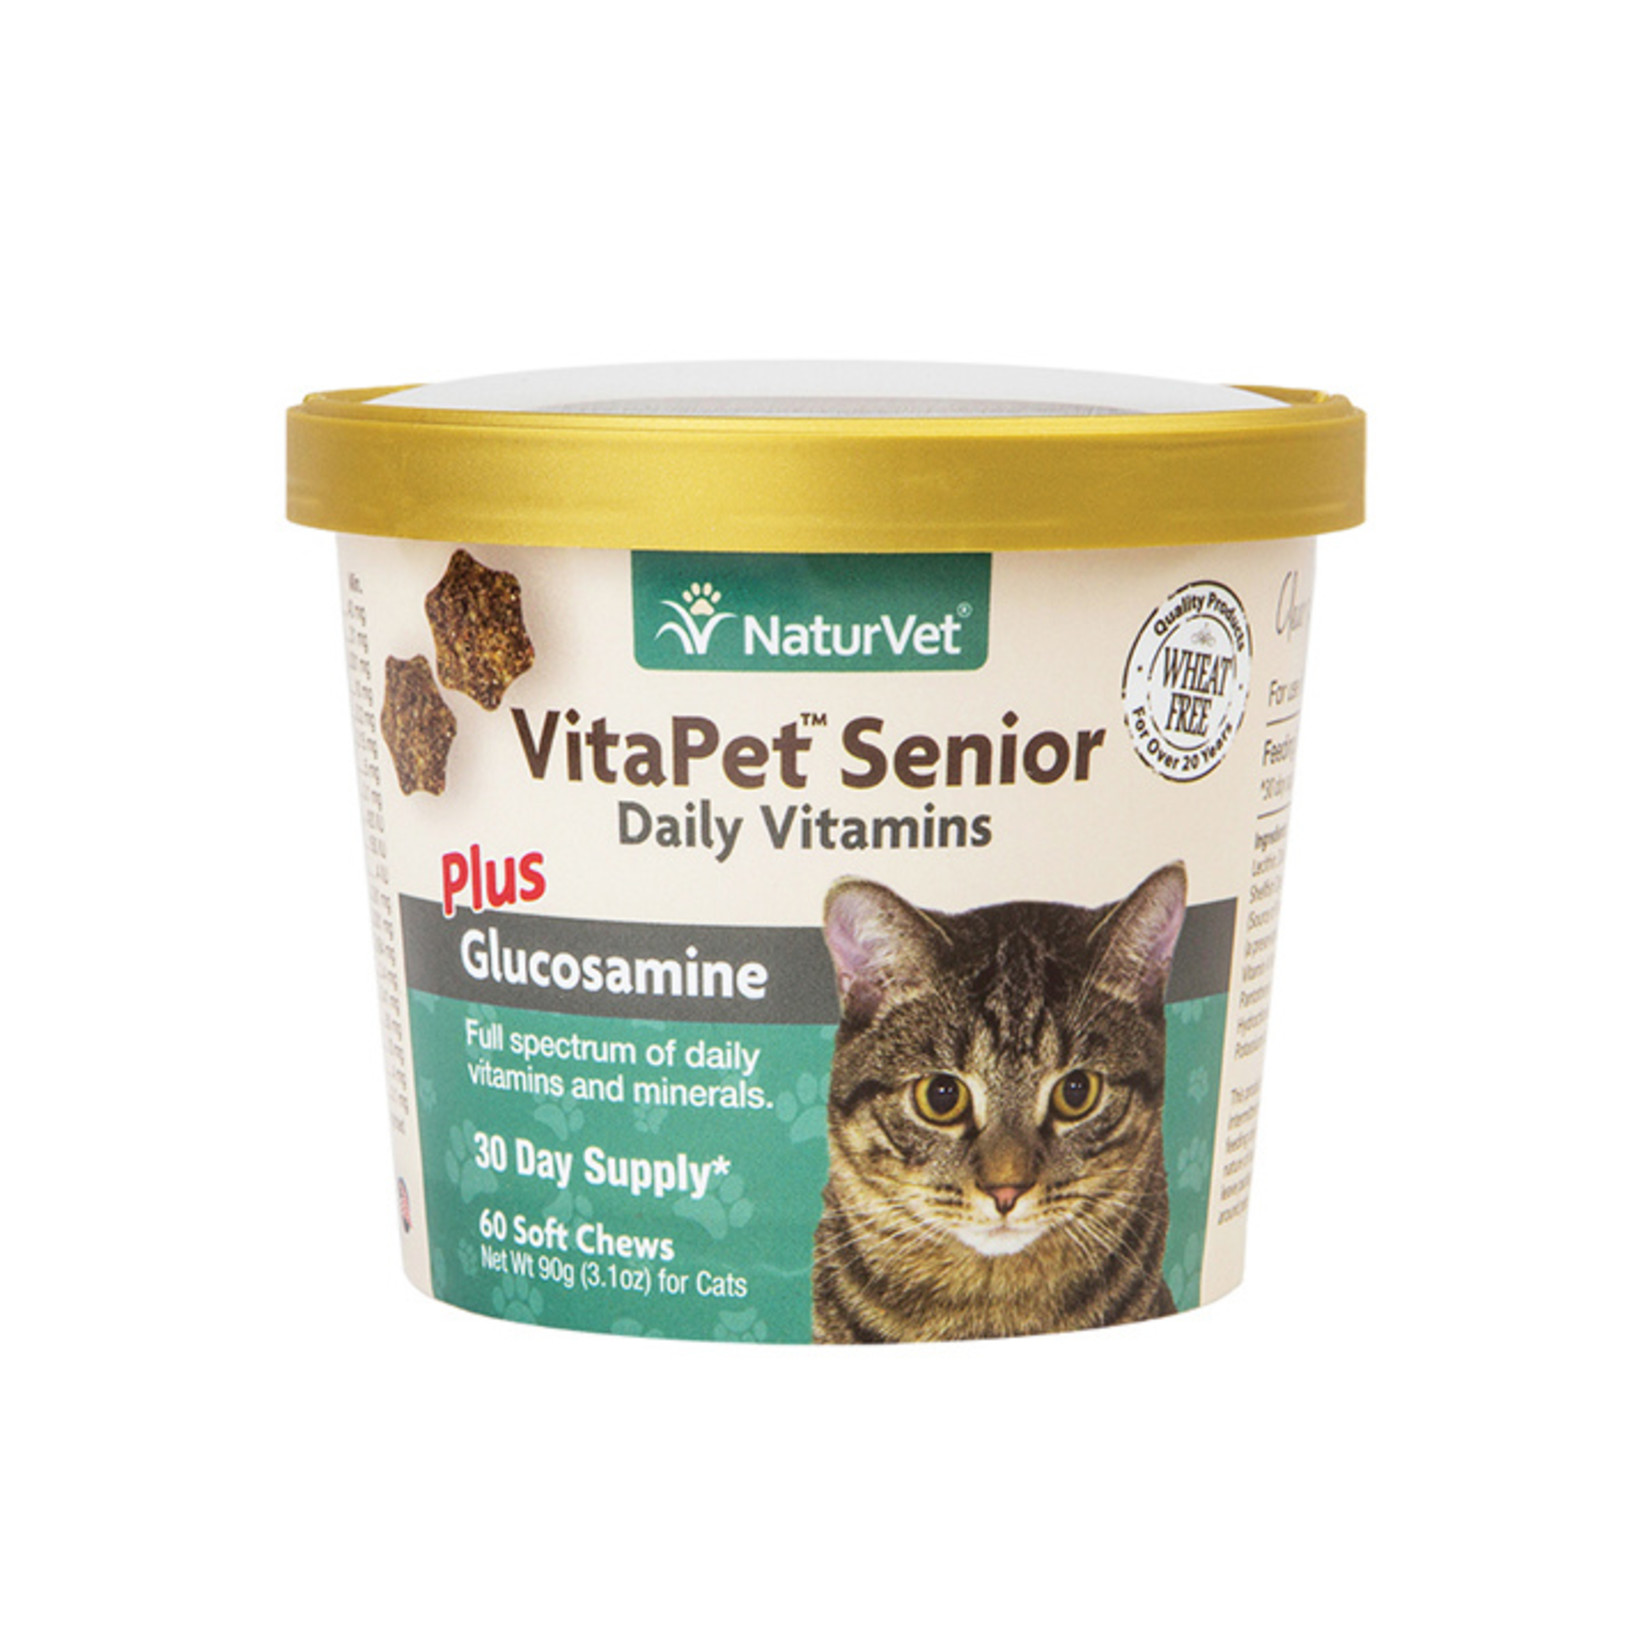 naturVet NaturVet Cat VitaPet Senior Daily Vitamins plus Glucosamine Chew 60ct